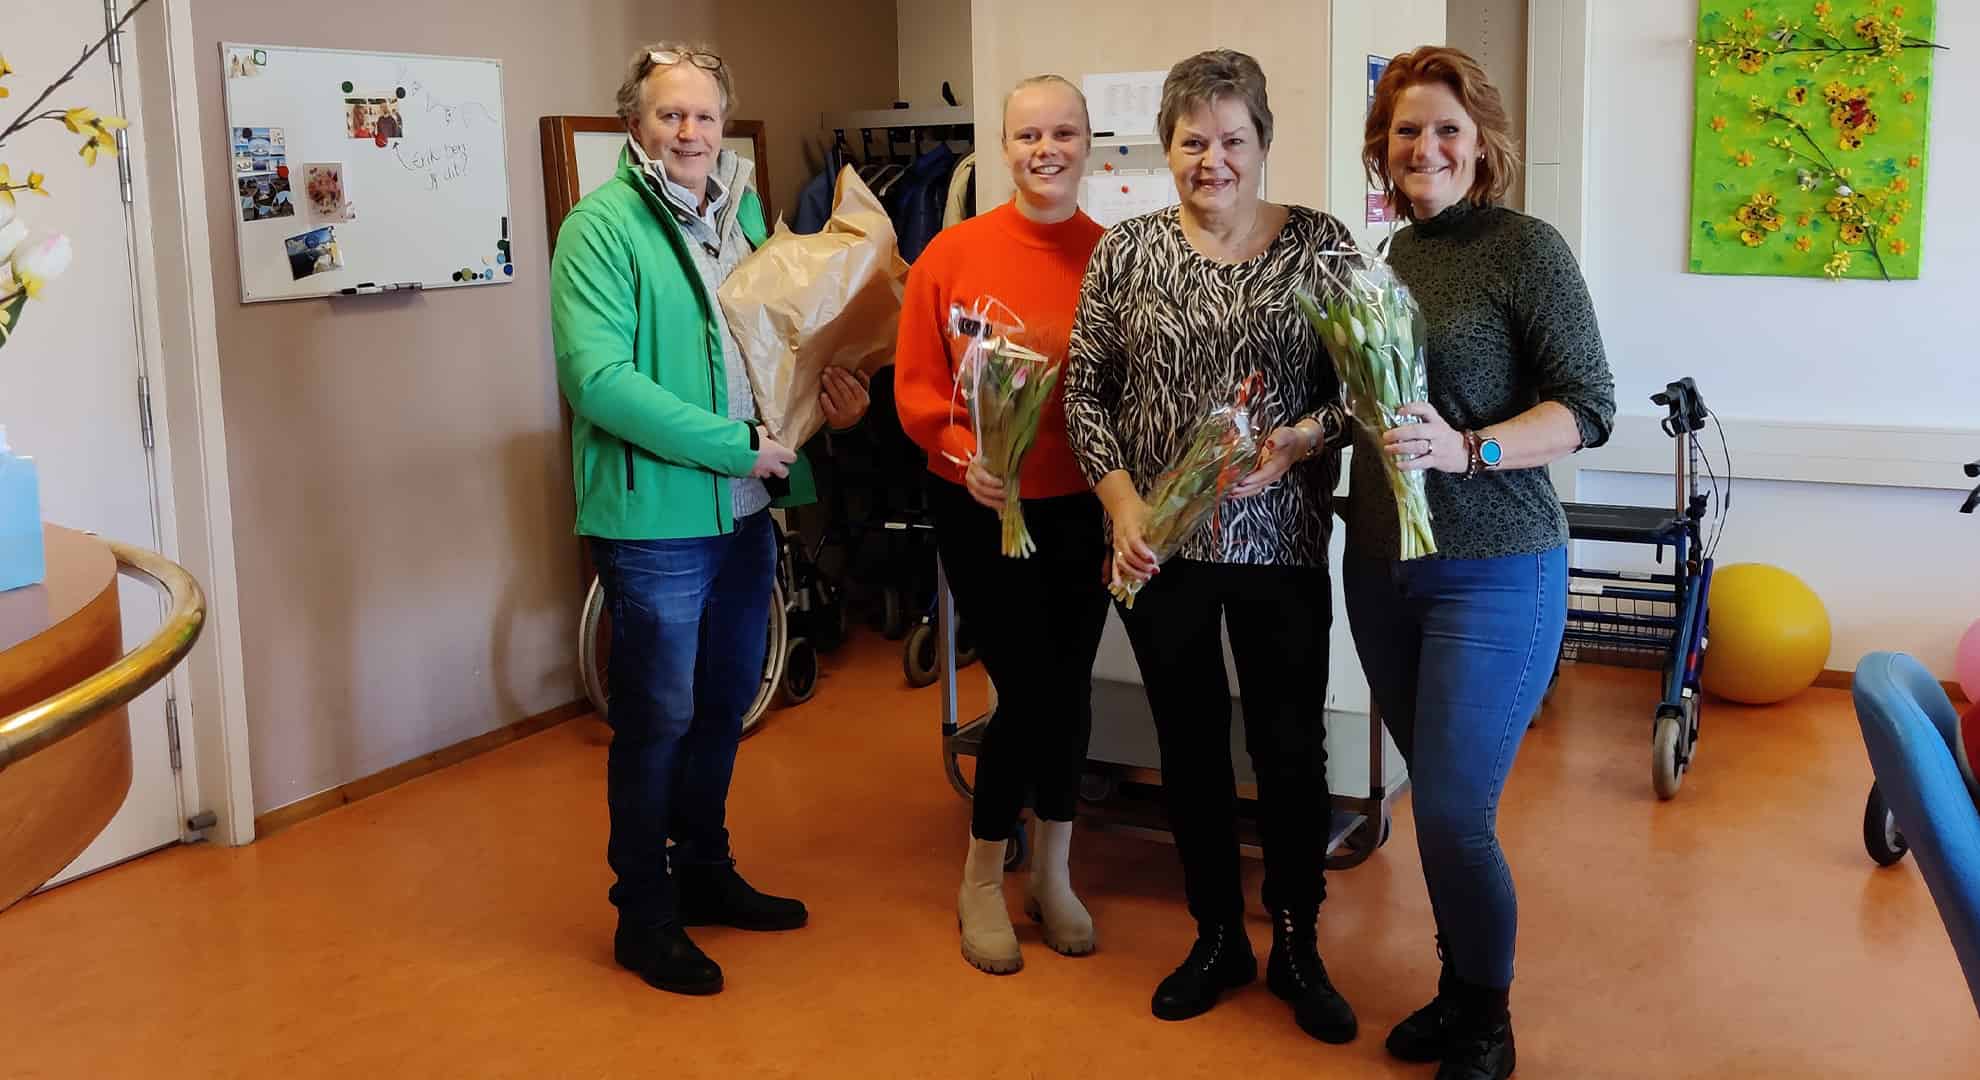 De medewerkers van de afdeling Dagbehandeling kregen een groot compliment en een bos tulpen van het CDA.